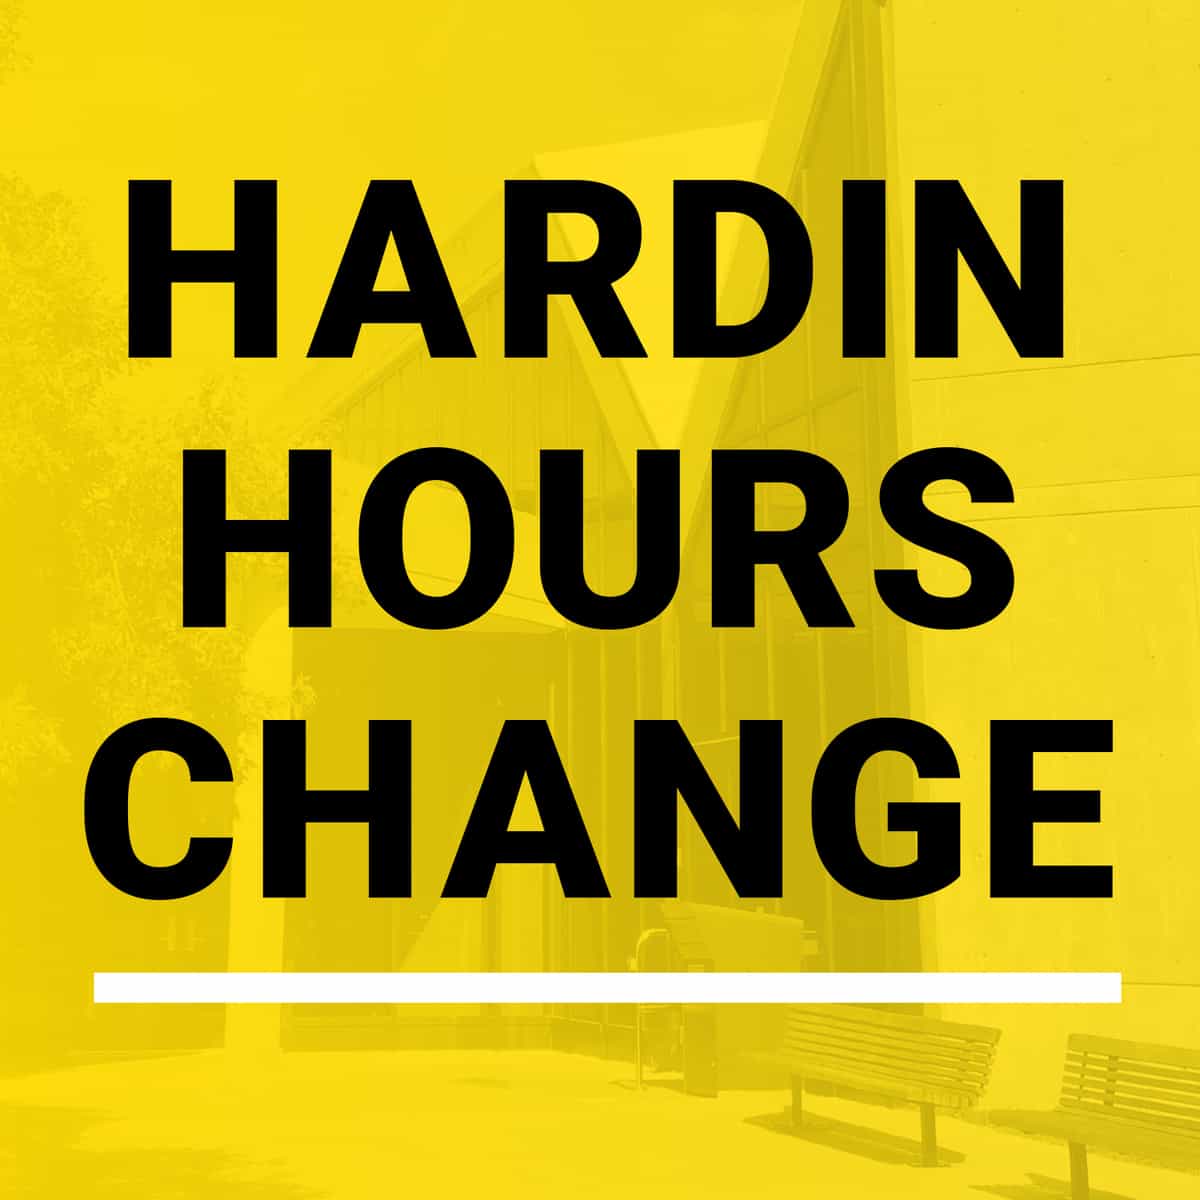 says Hardin Hours Change